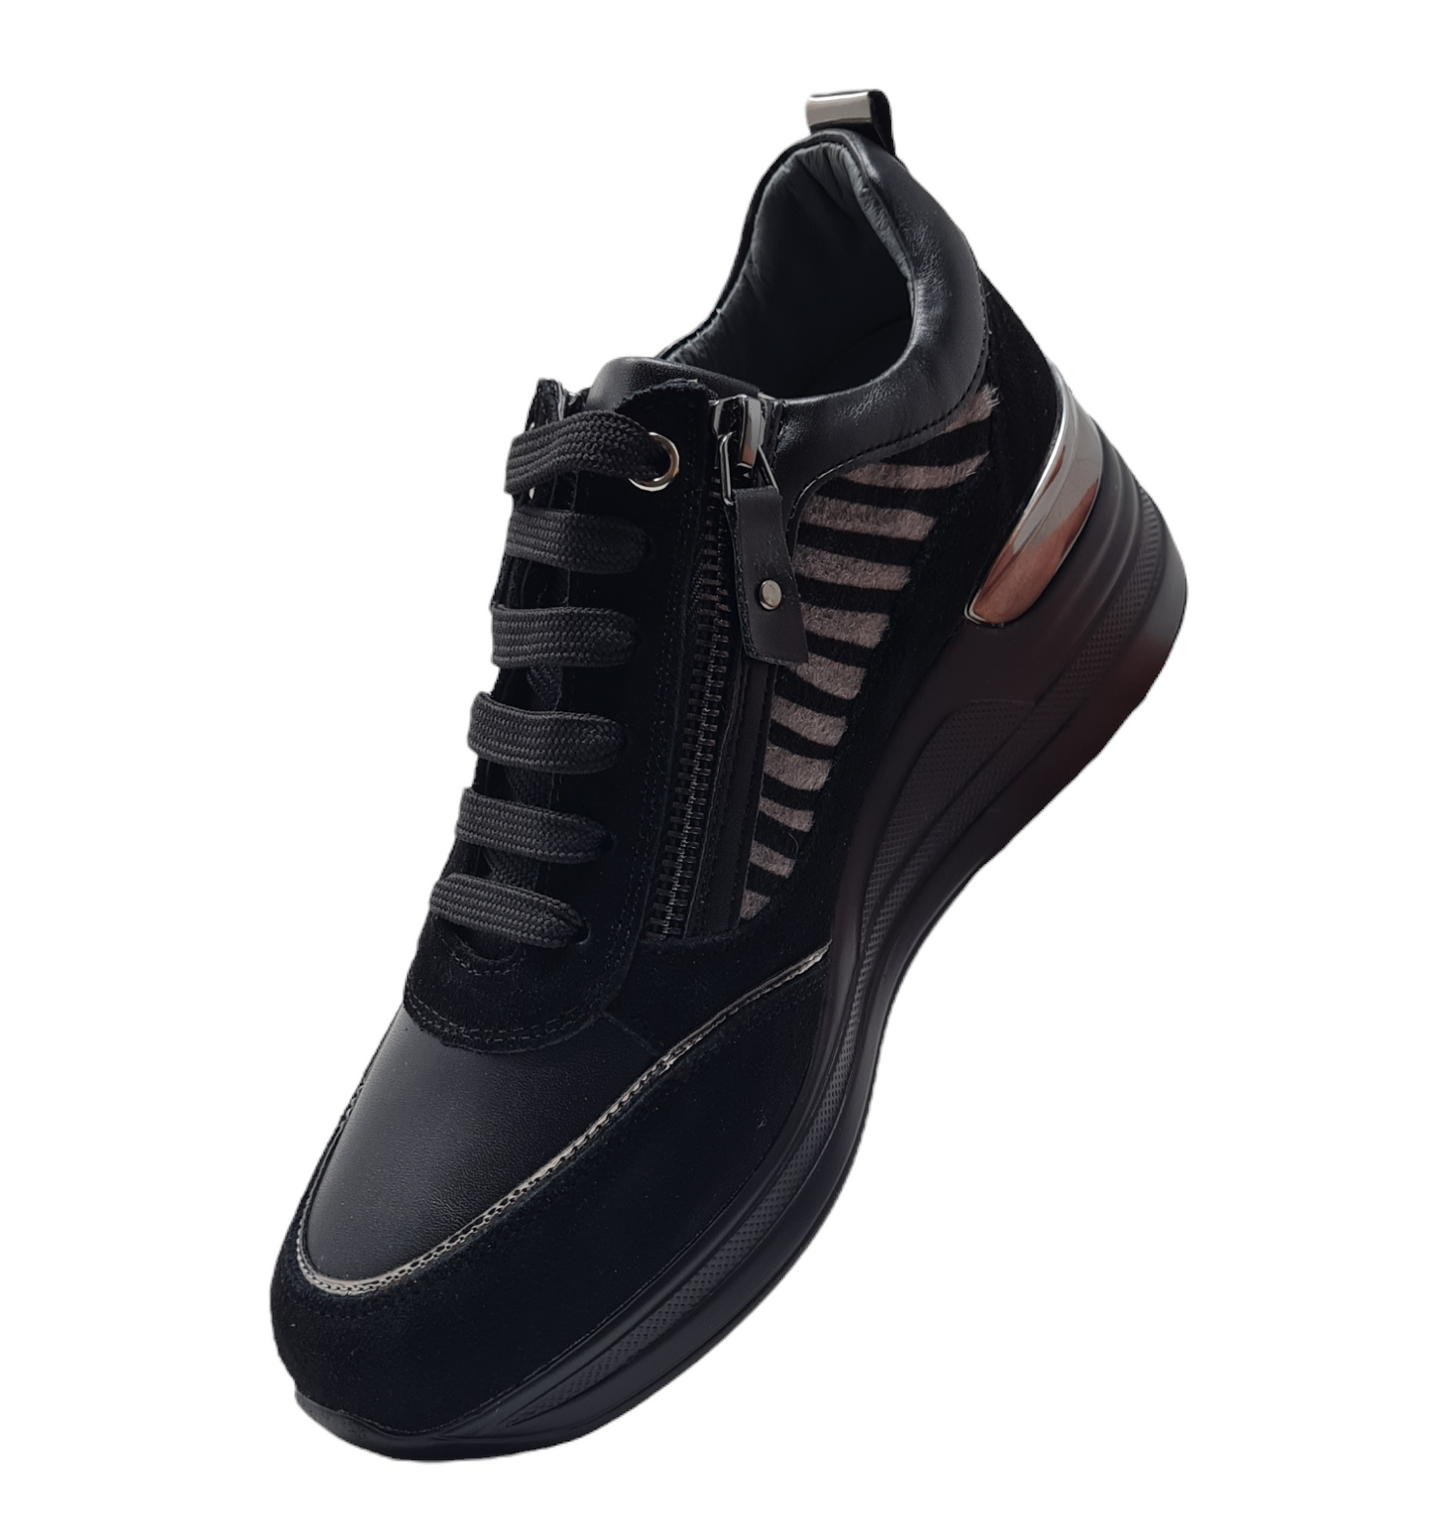 Wedge sneakers K6821